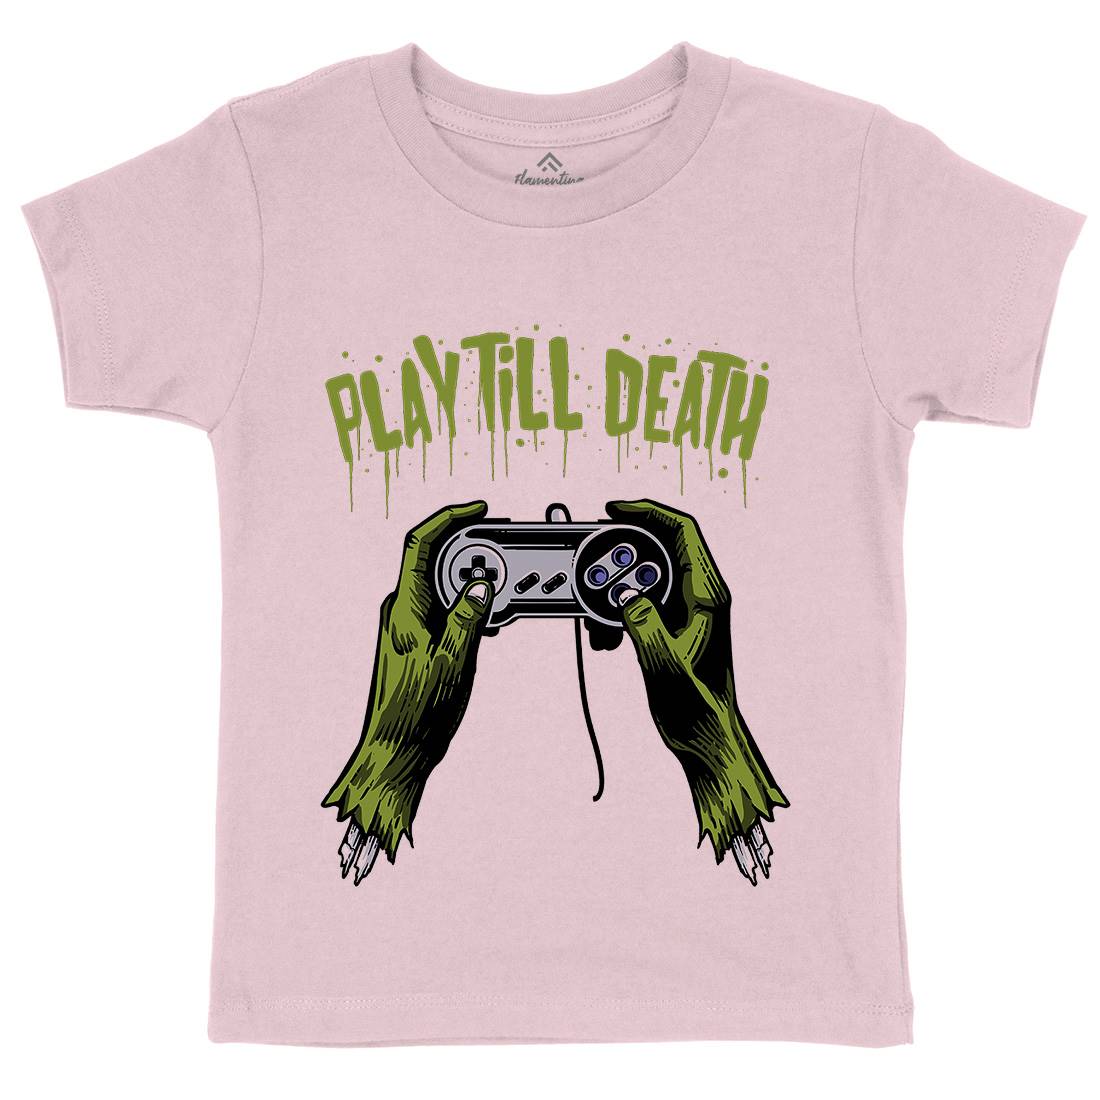 Play Till Death Kids Organic Crew Neck T-Shirt Geek A561